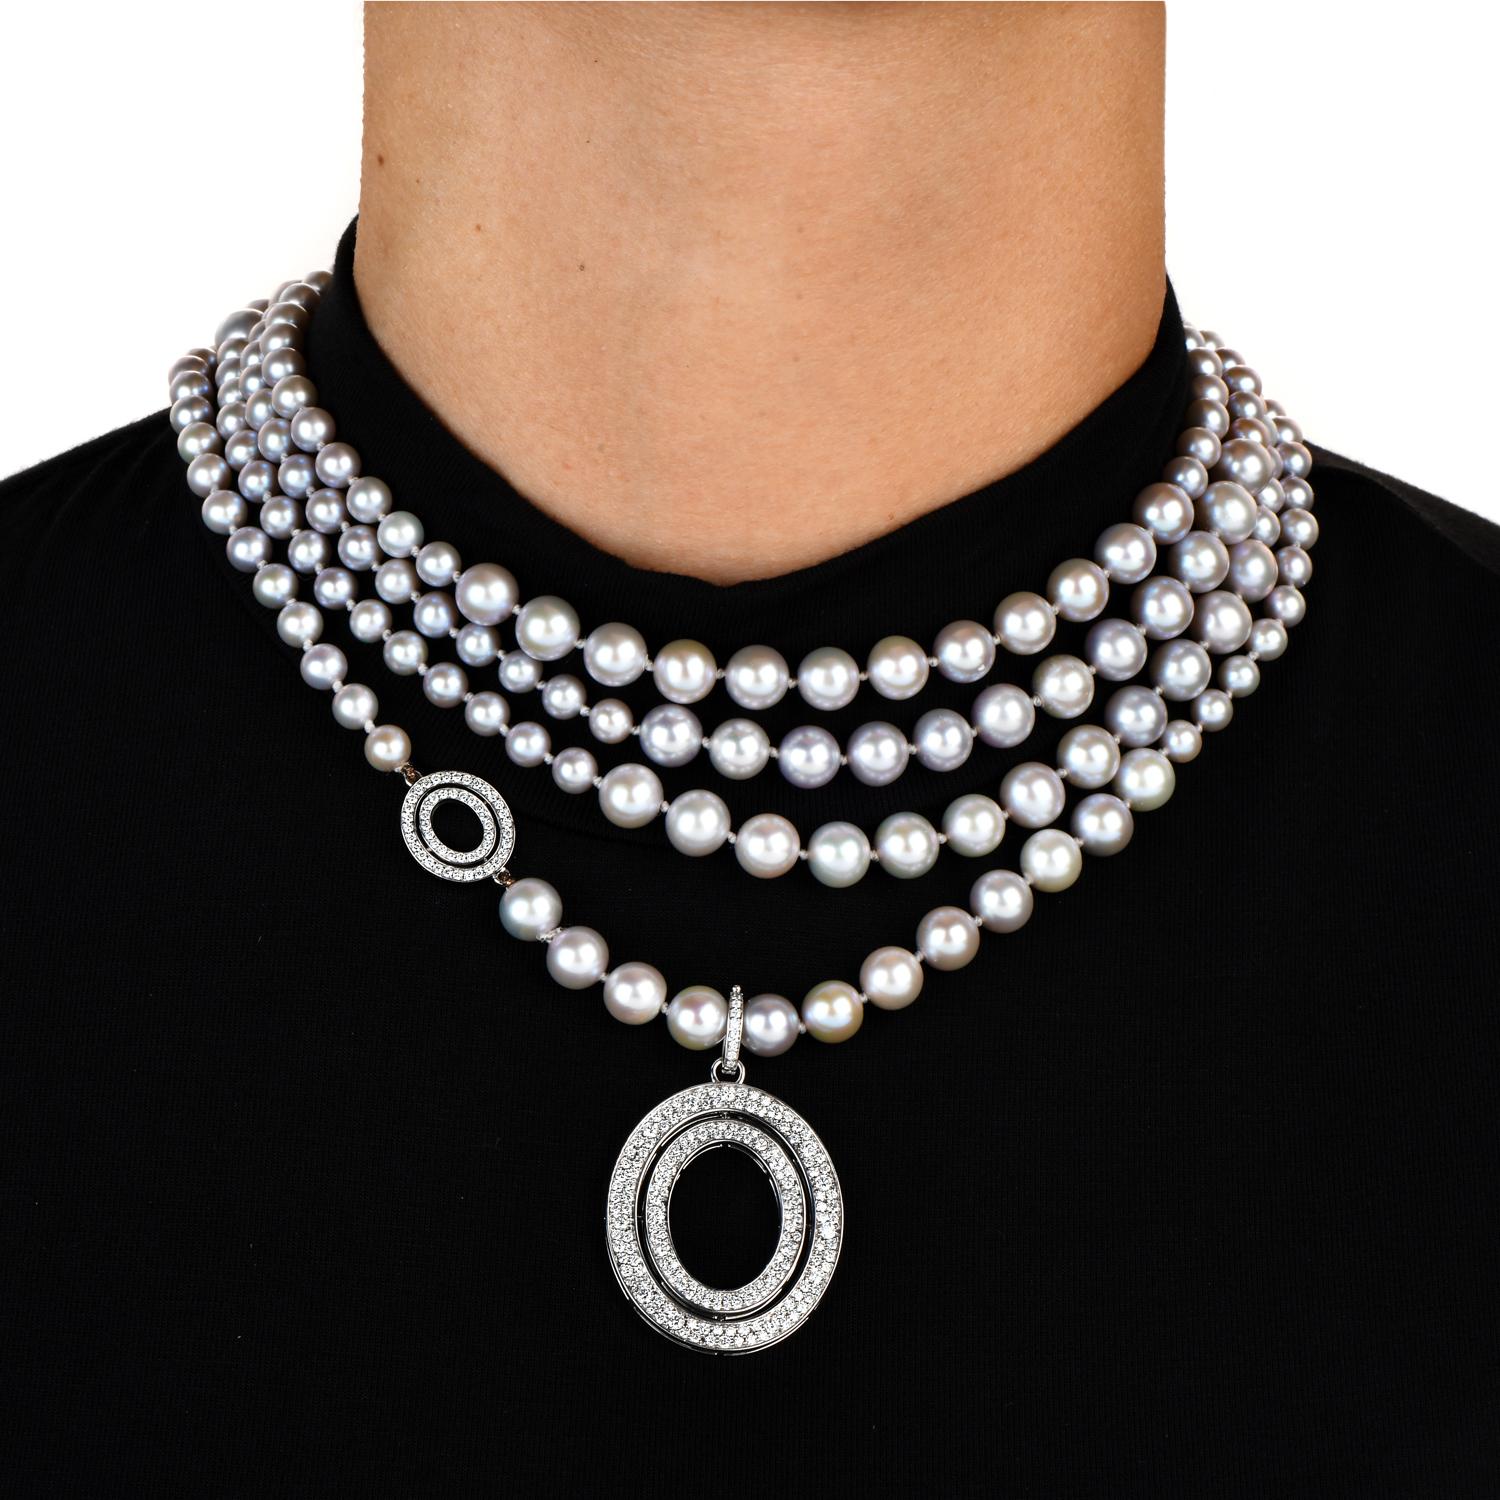 Die perfekte Halskette zum Kombinieren für die moderne und elegante Frau.

Dieses vielseitige Kleidungsstück kann sowohl für die Arbeit als auch für ein feines Abendessen verwendet werden und lässt sich auf vielfältige Weise für einen neuen Look